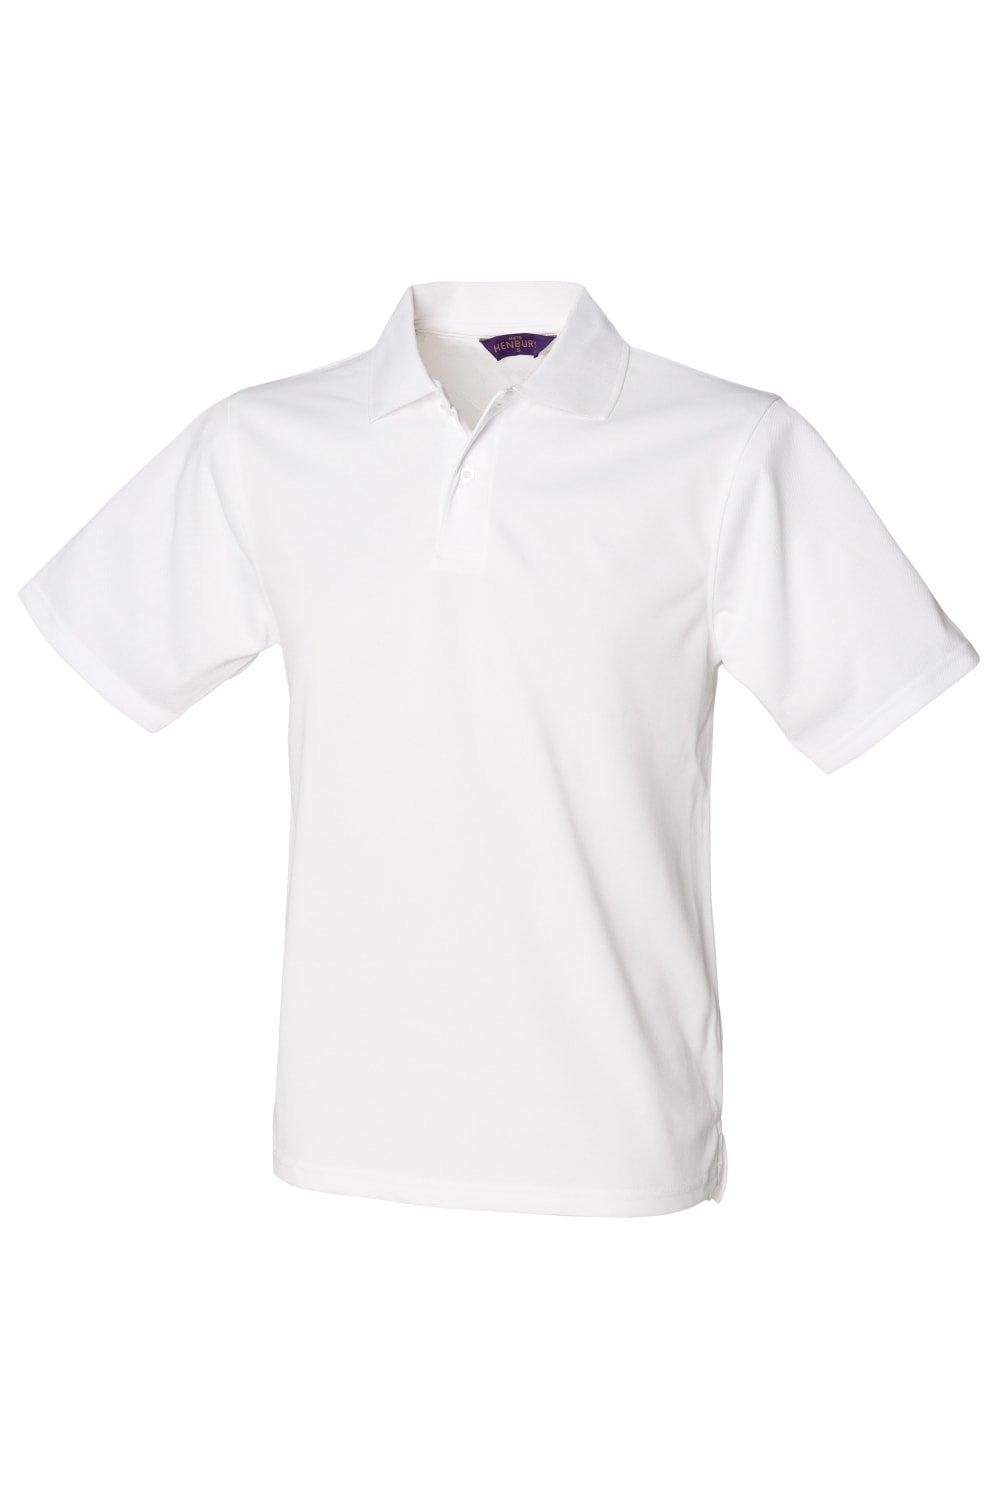 Рубашка поло Coolplus из пике Henbury, белый рубашка sol s размер xs белый